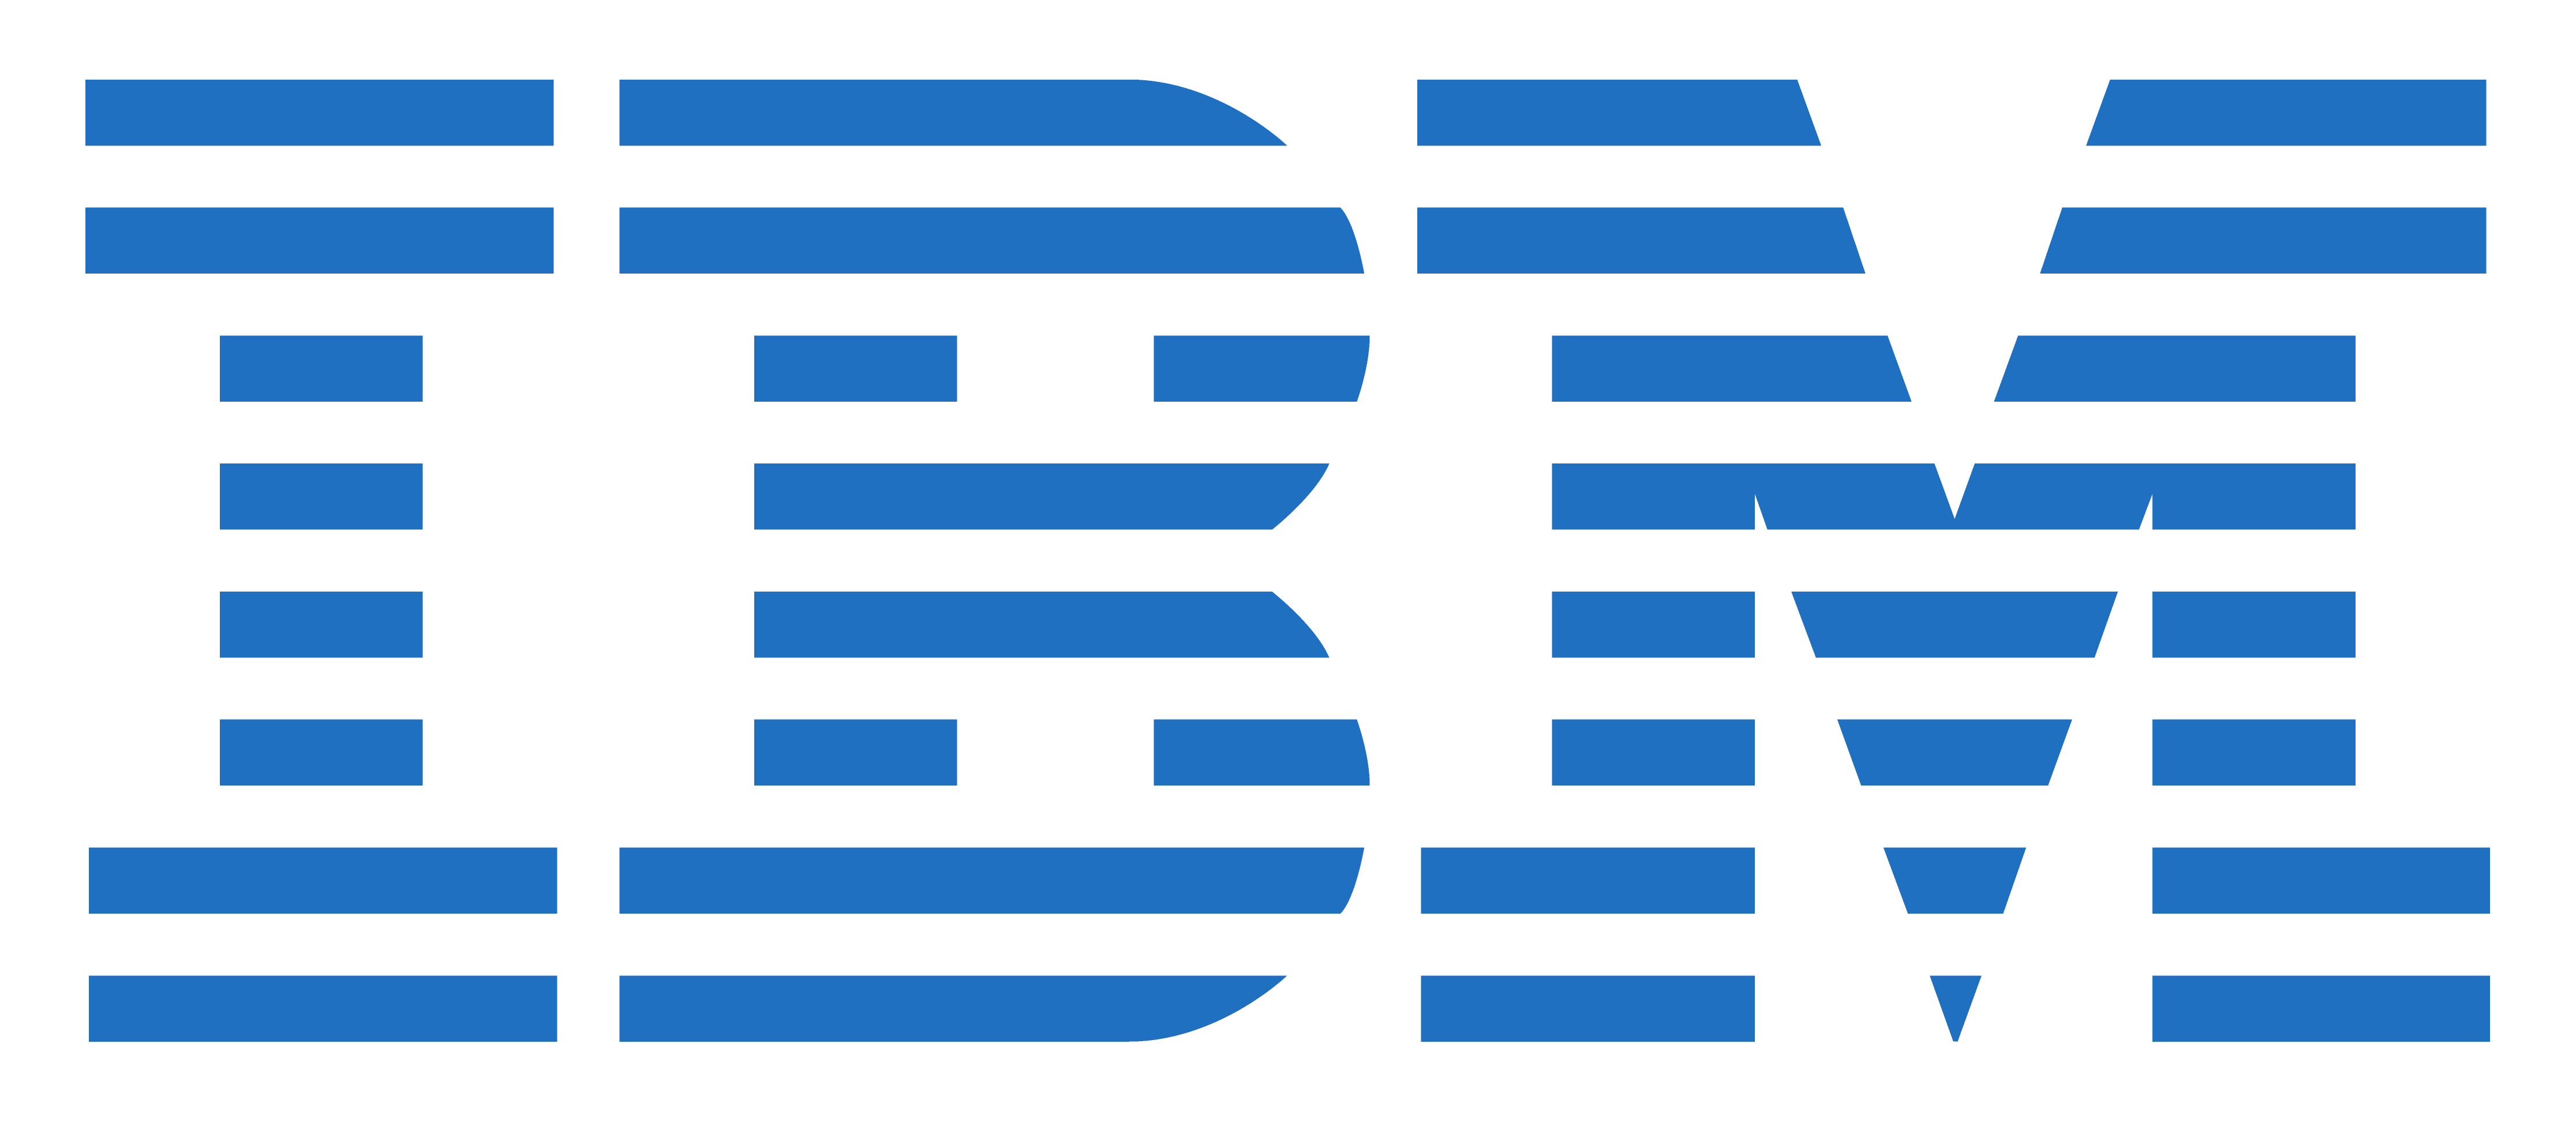 File:Old IBM Logo.png